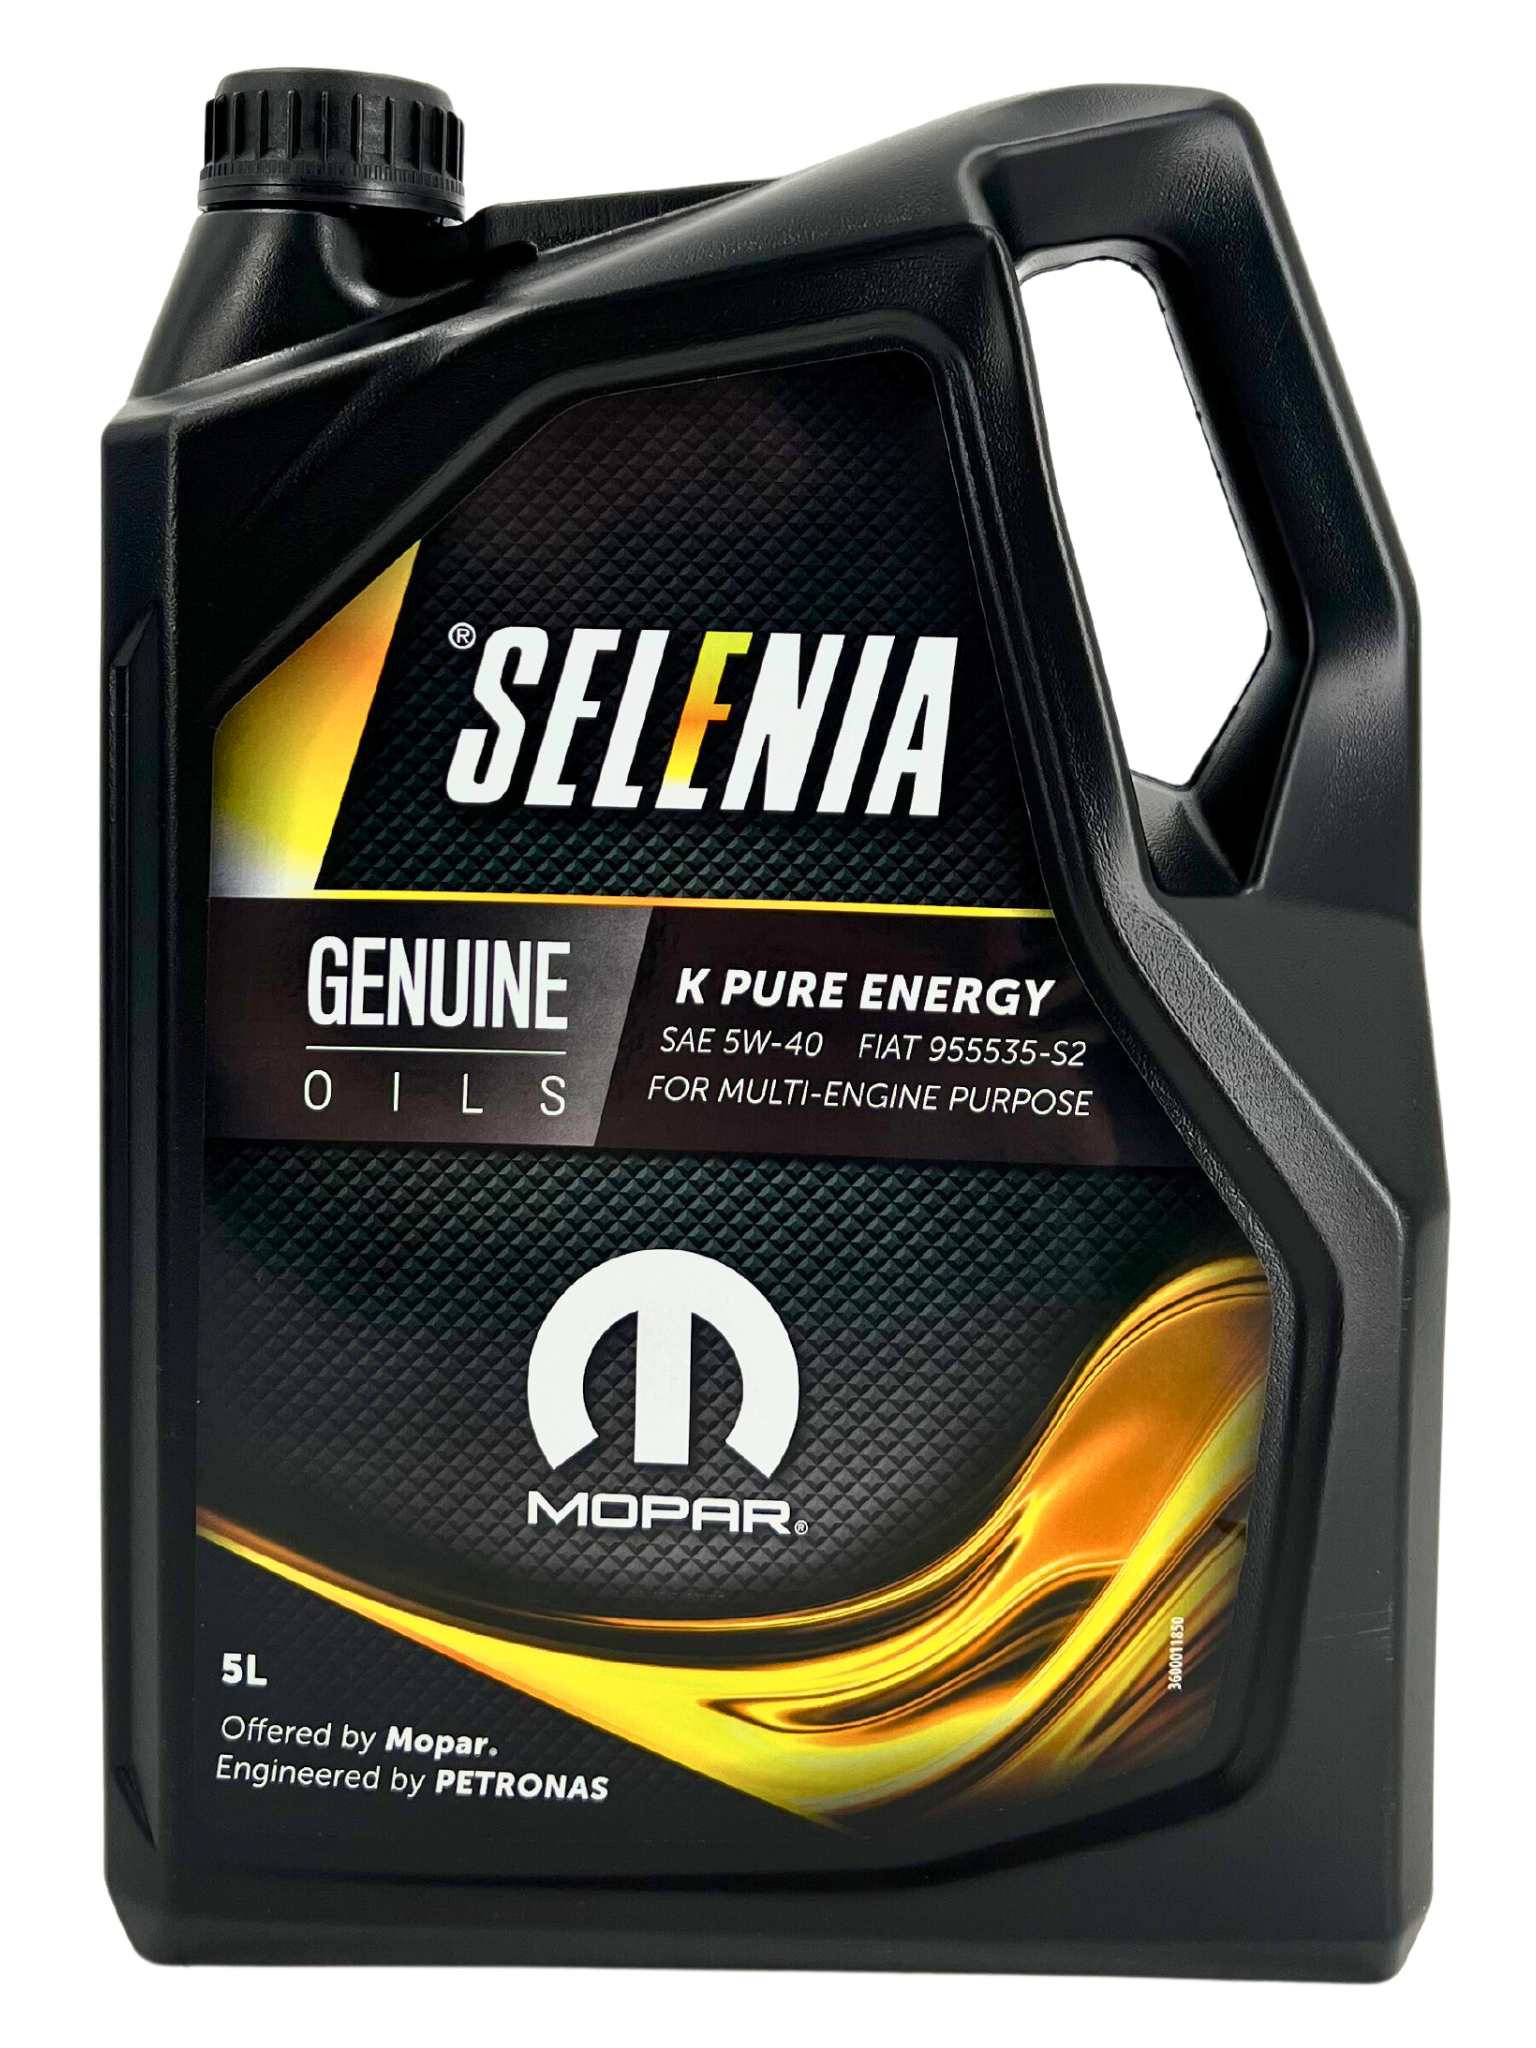 Selenia K Pure Energy 5W-40 5 Liter